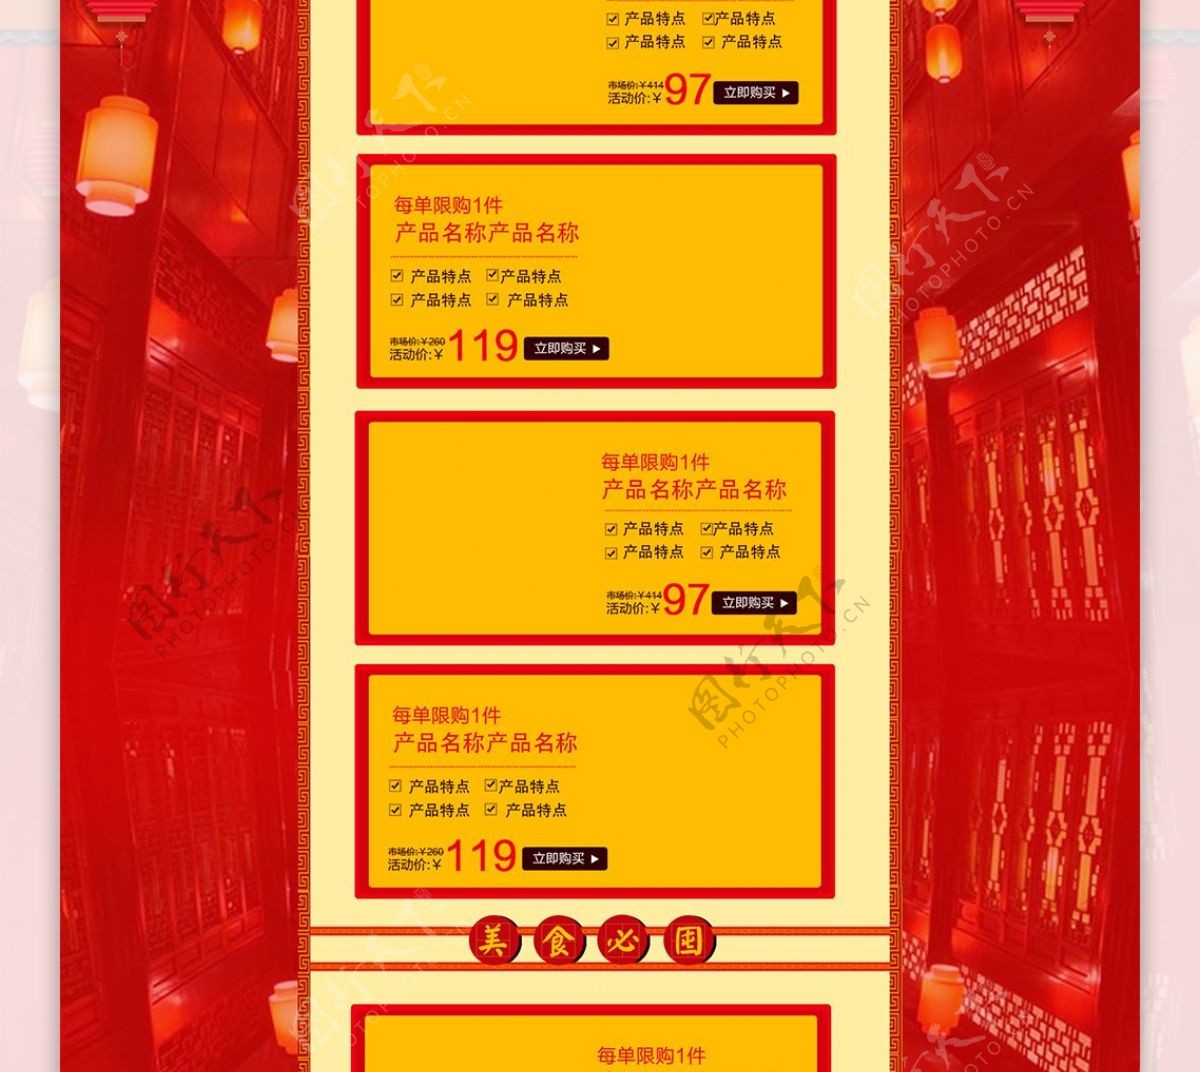 天猫淘宝红色喜庆年货节首页促销模板